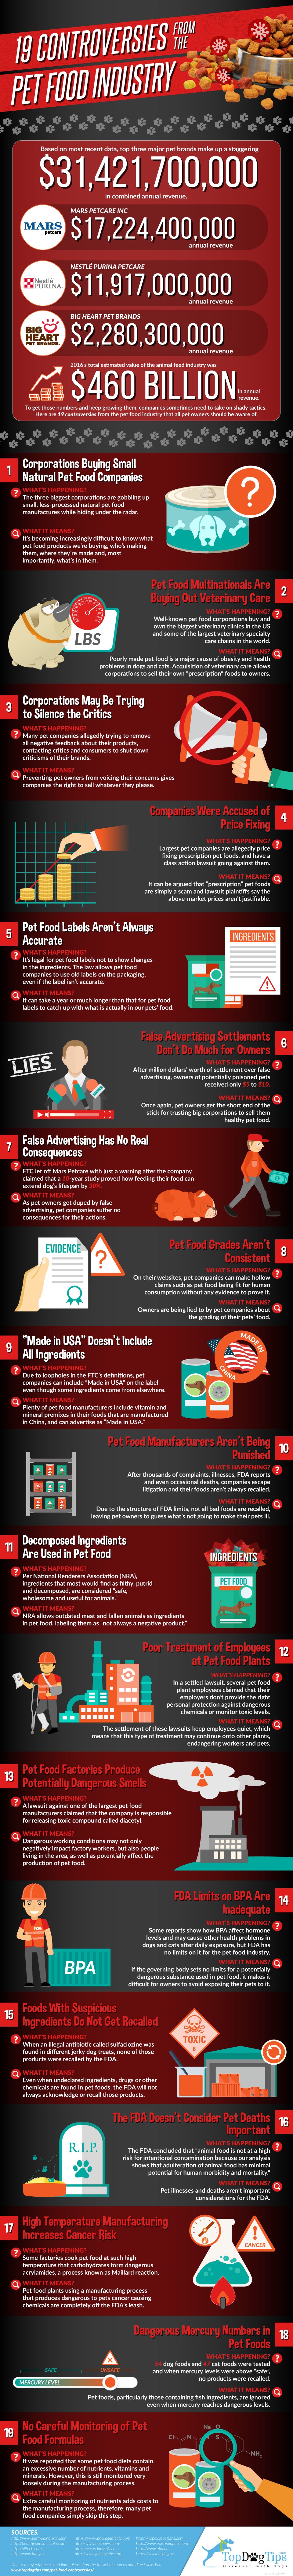 19 kontroverzí obklopujících průmysl krmiv pro domácí zvířata [Infographic]